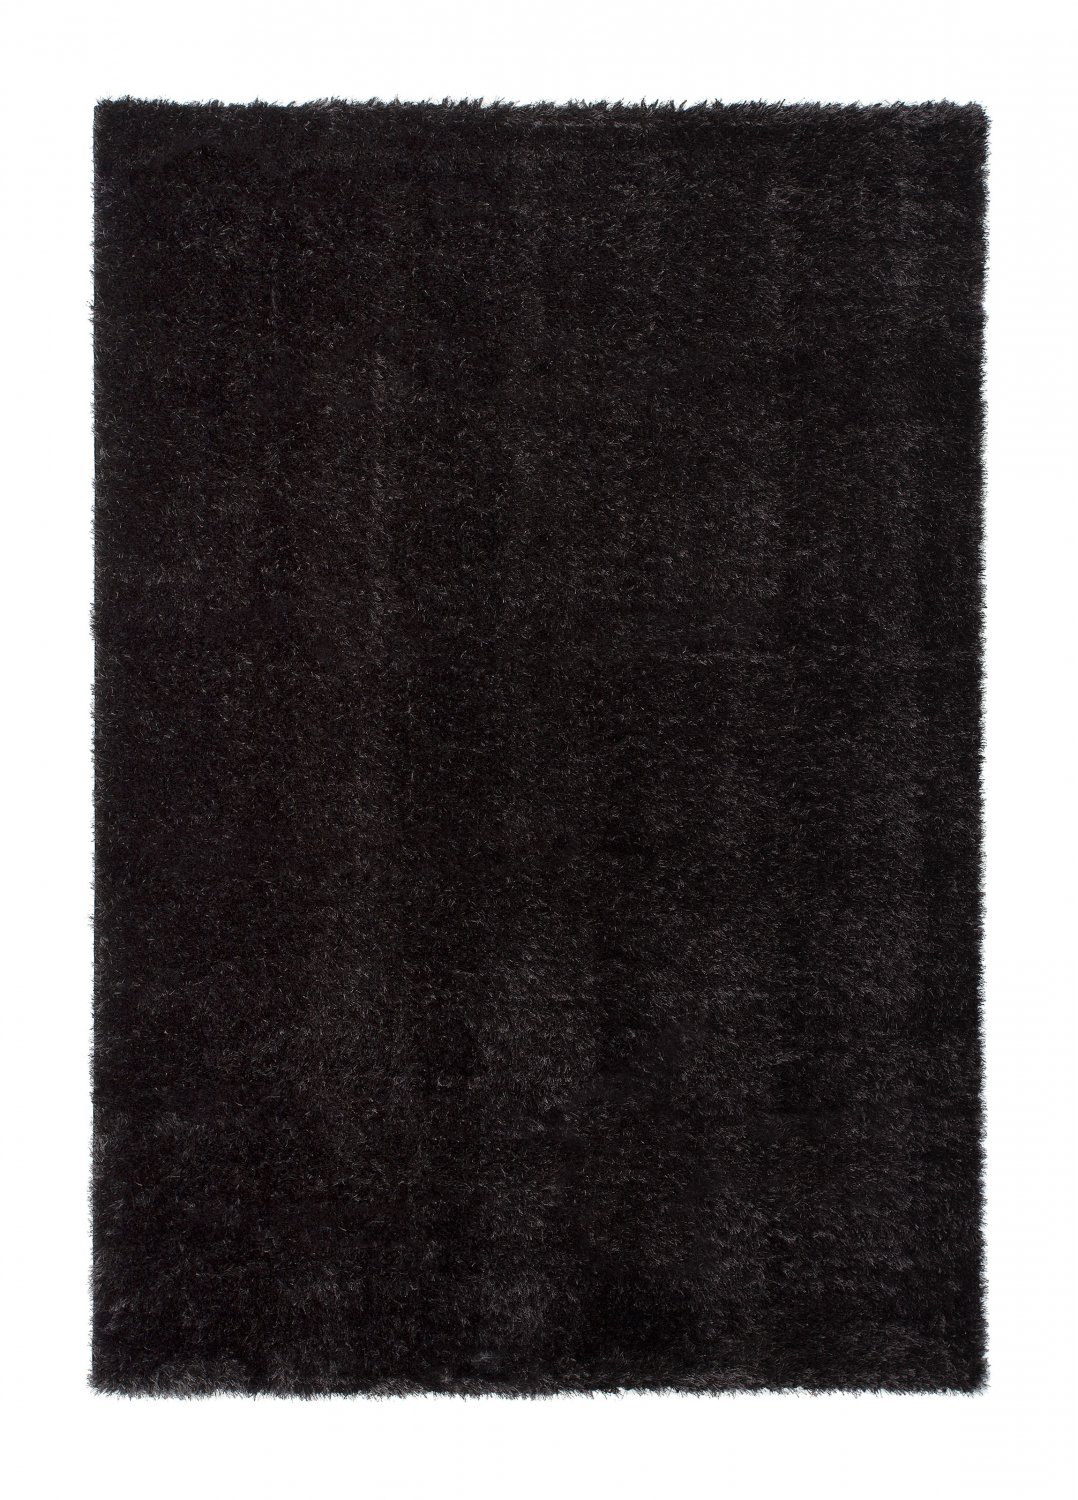 Safir Alfombras de pelo largo negro 60x120 cm 80x 150 cm 140x200 cm 160x230 cm 200x300 cm